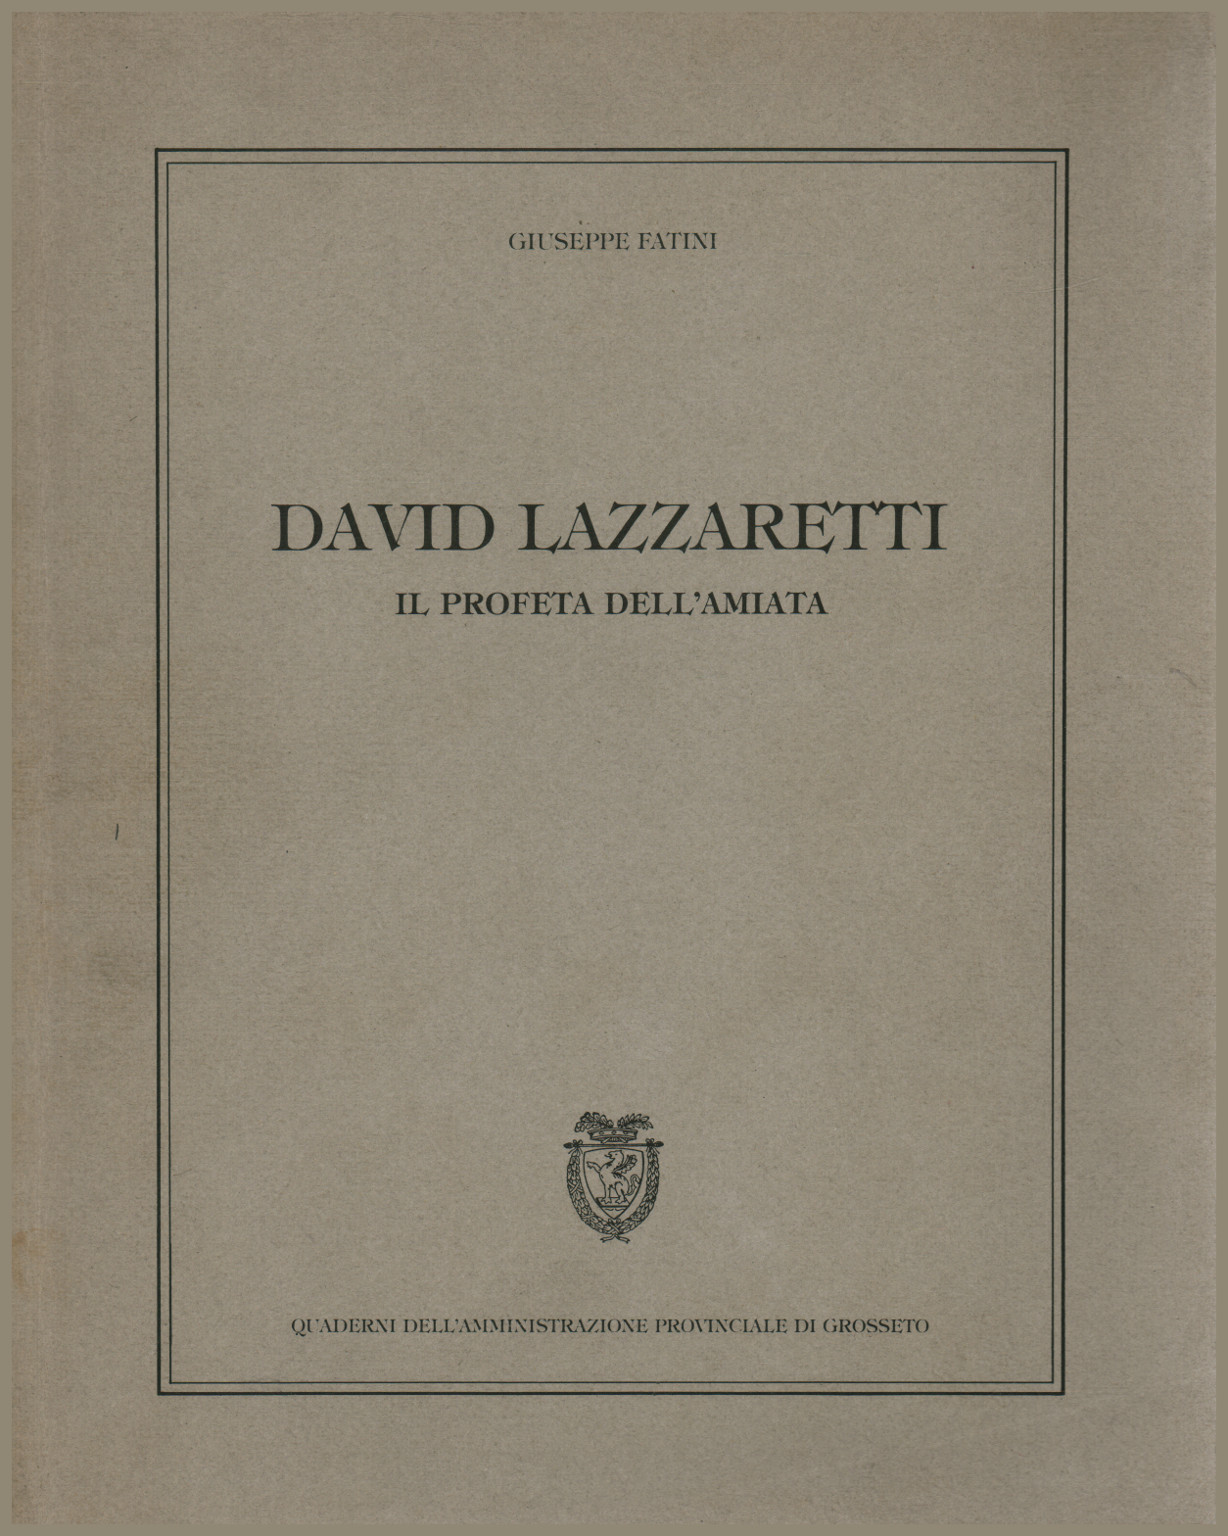 David Lazzaretti. The prophet of Amiata, s.a.